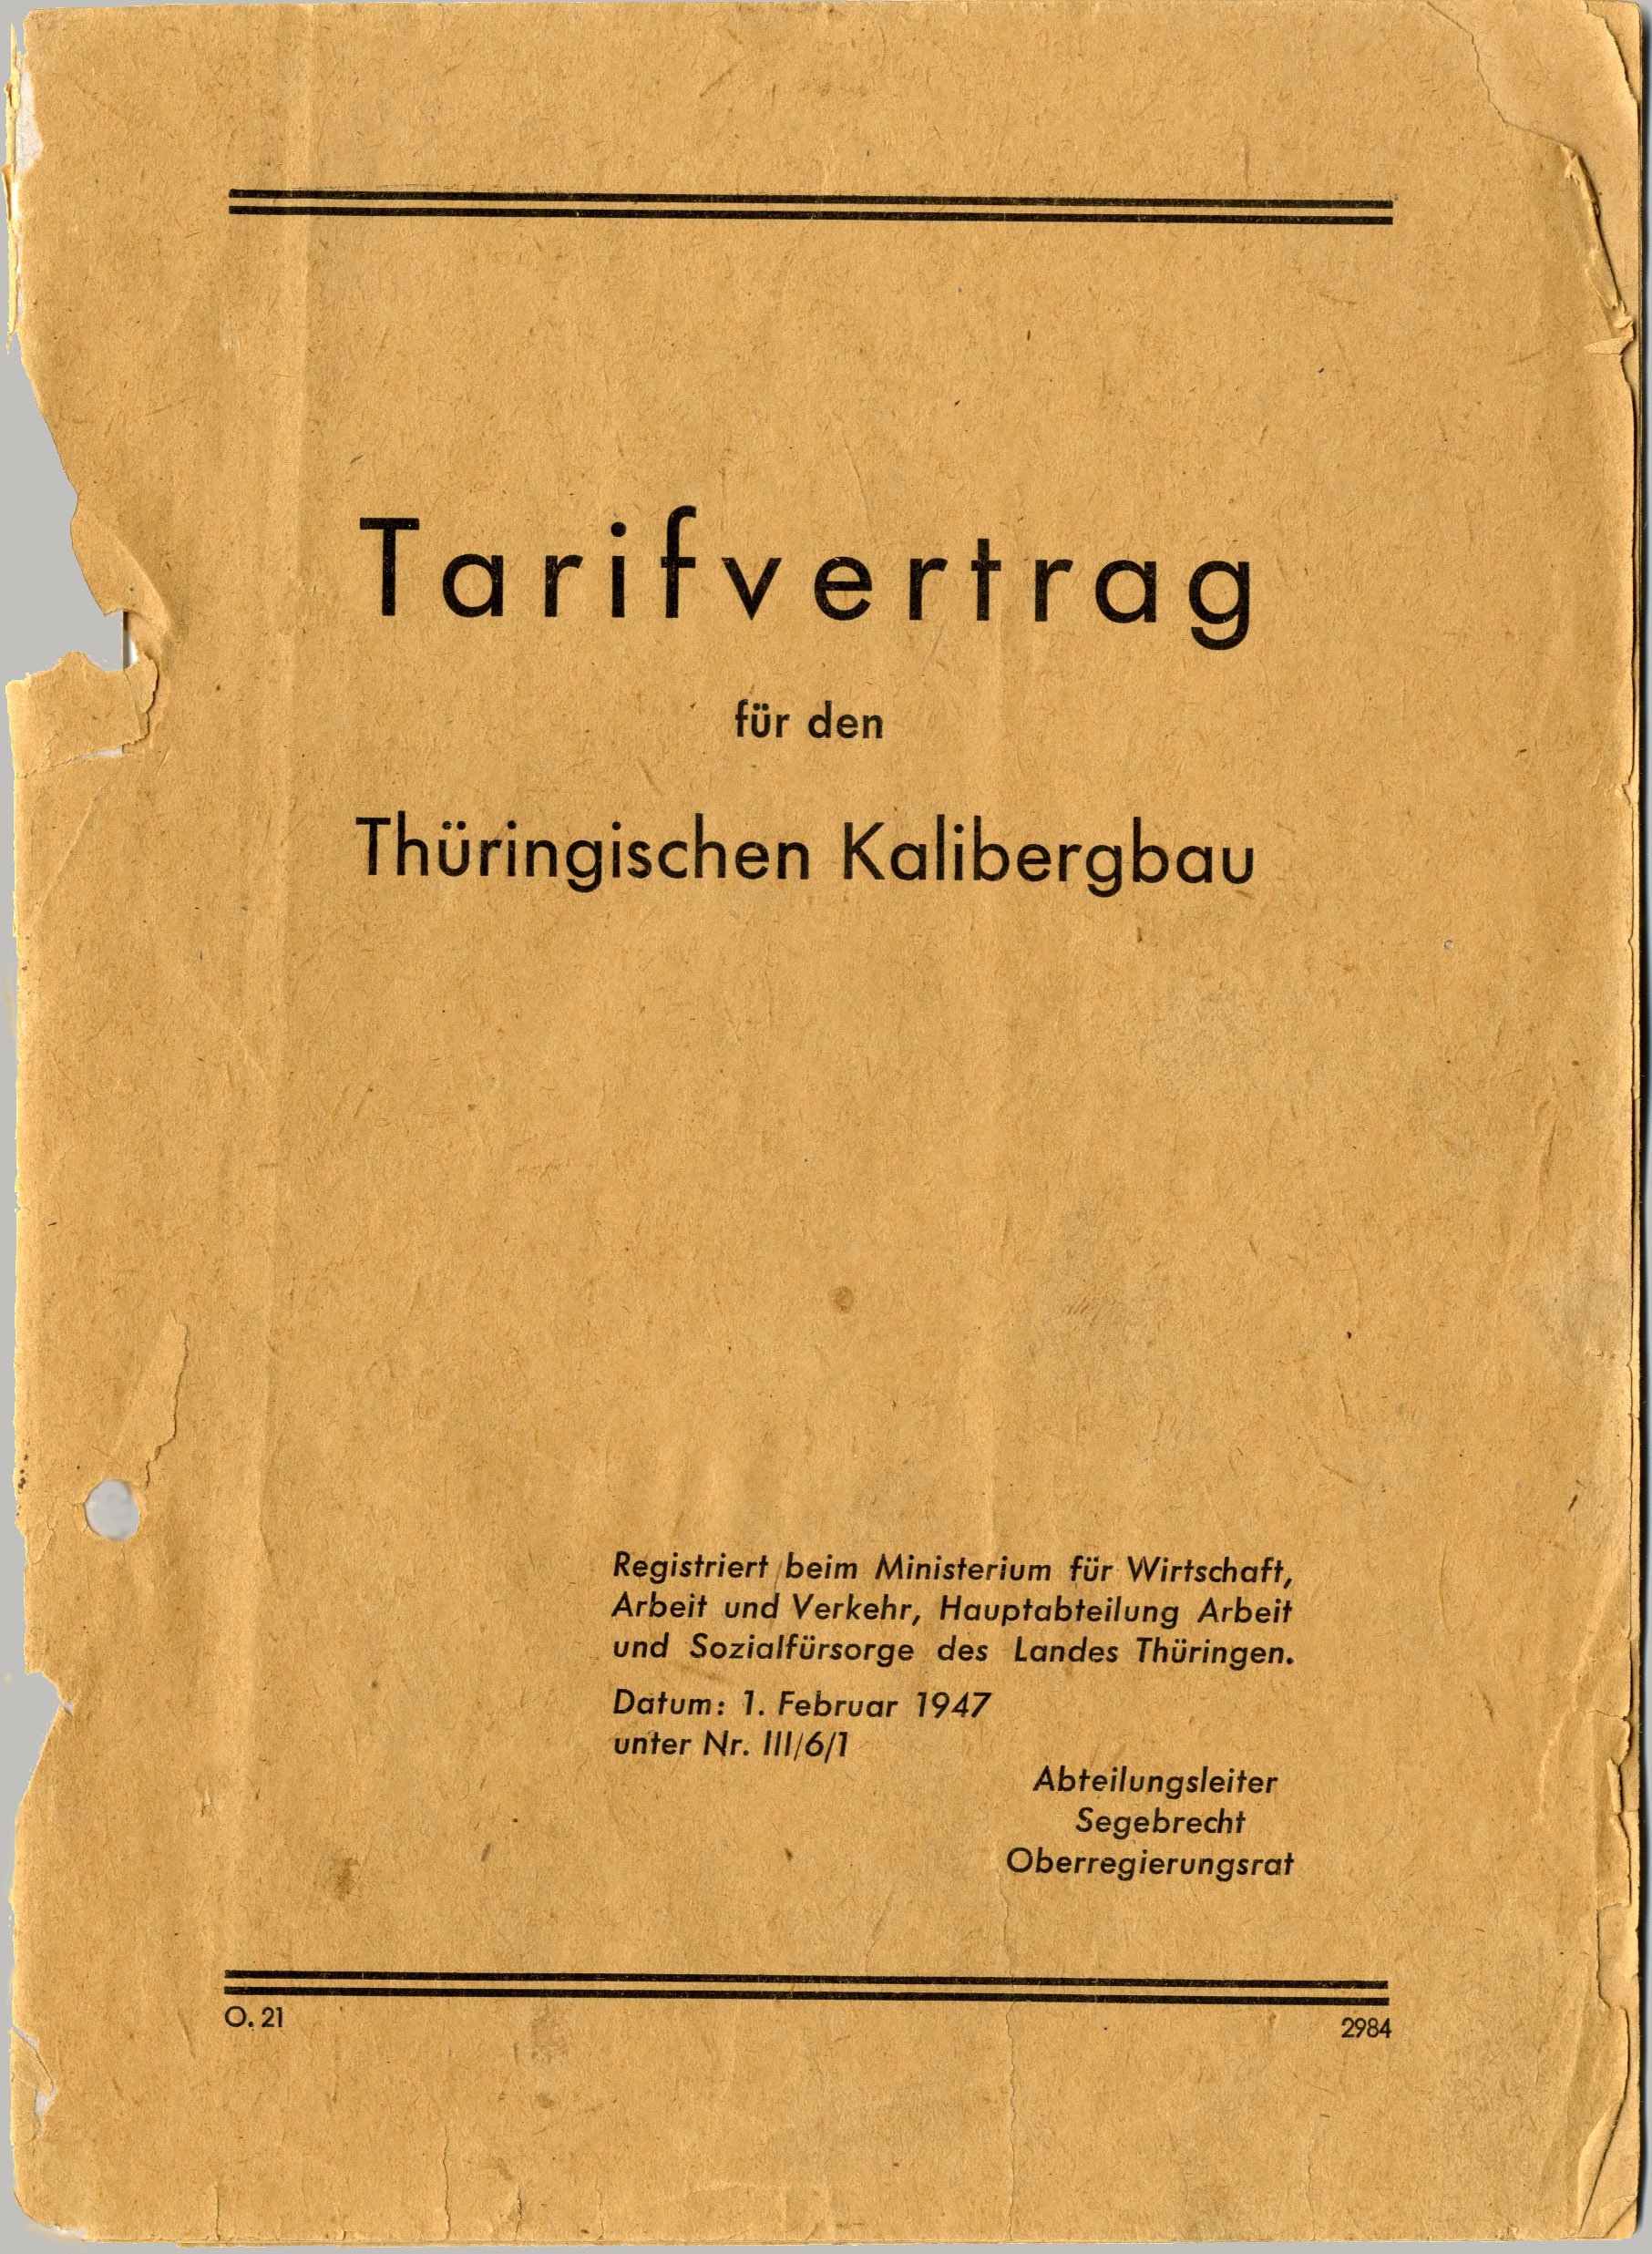 Tarifvertrag für den Thüringischen Kalibergbau (Werra-Kalibergbau-Museum, Heringen/W. CC BY-NC-SA)